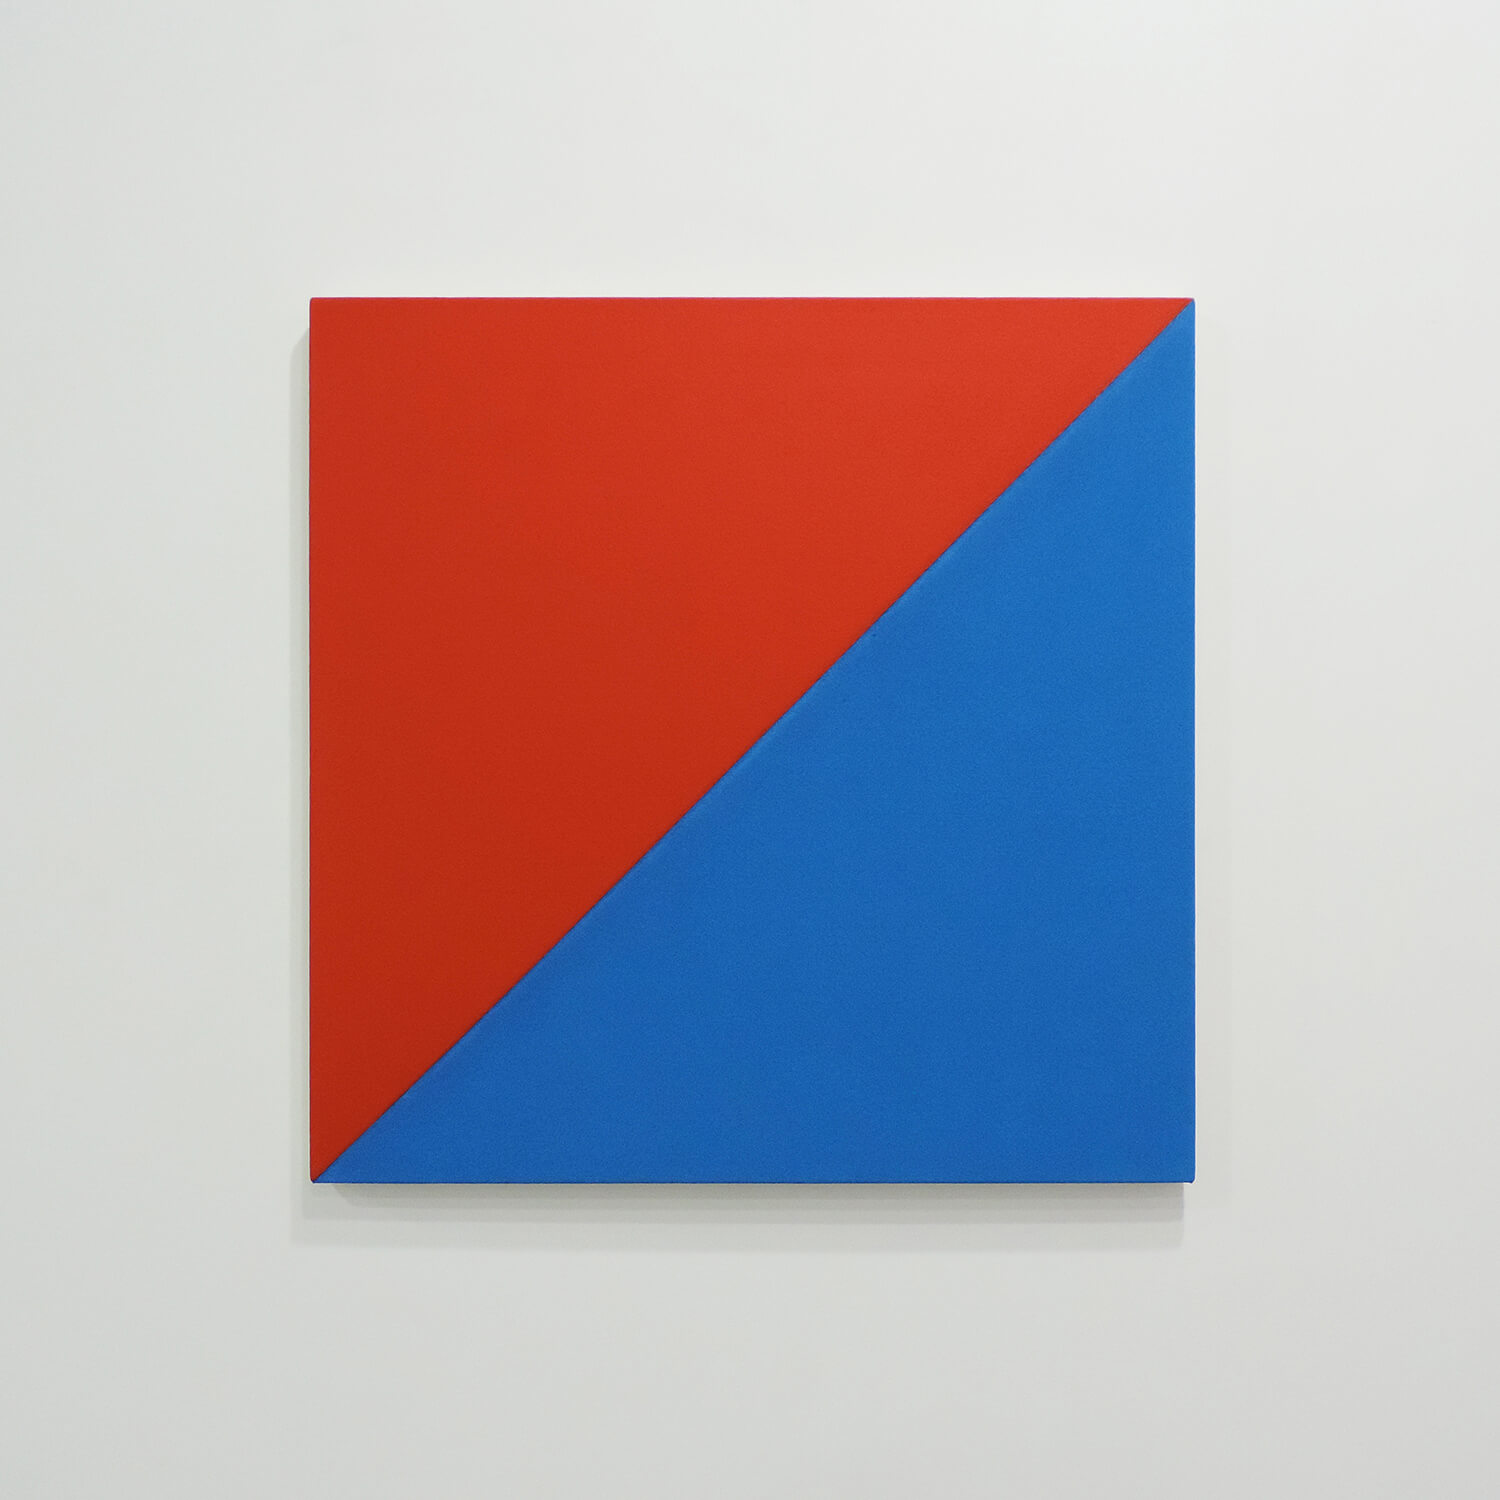 <b>鈴木 隆 Takashi Suzuki</b><br>Text No.1033<br>Oil and  acrylic on canvas, 65.3 x 65.3 x 3 cm<br>2015